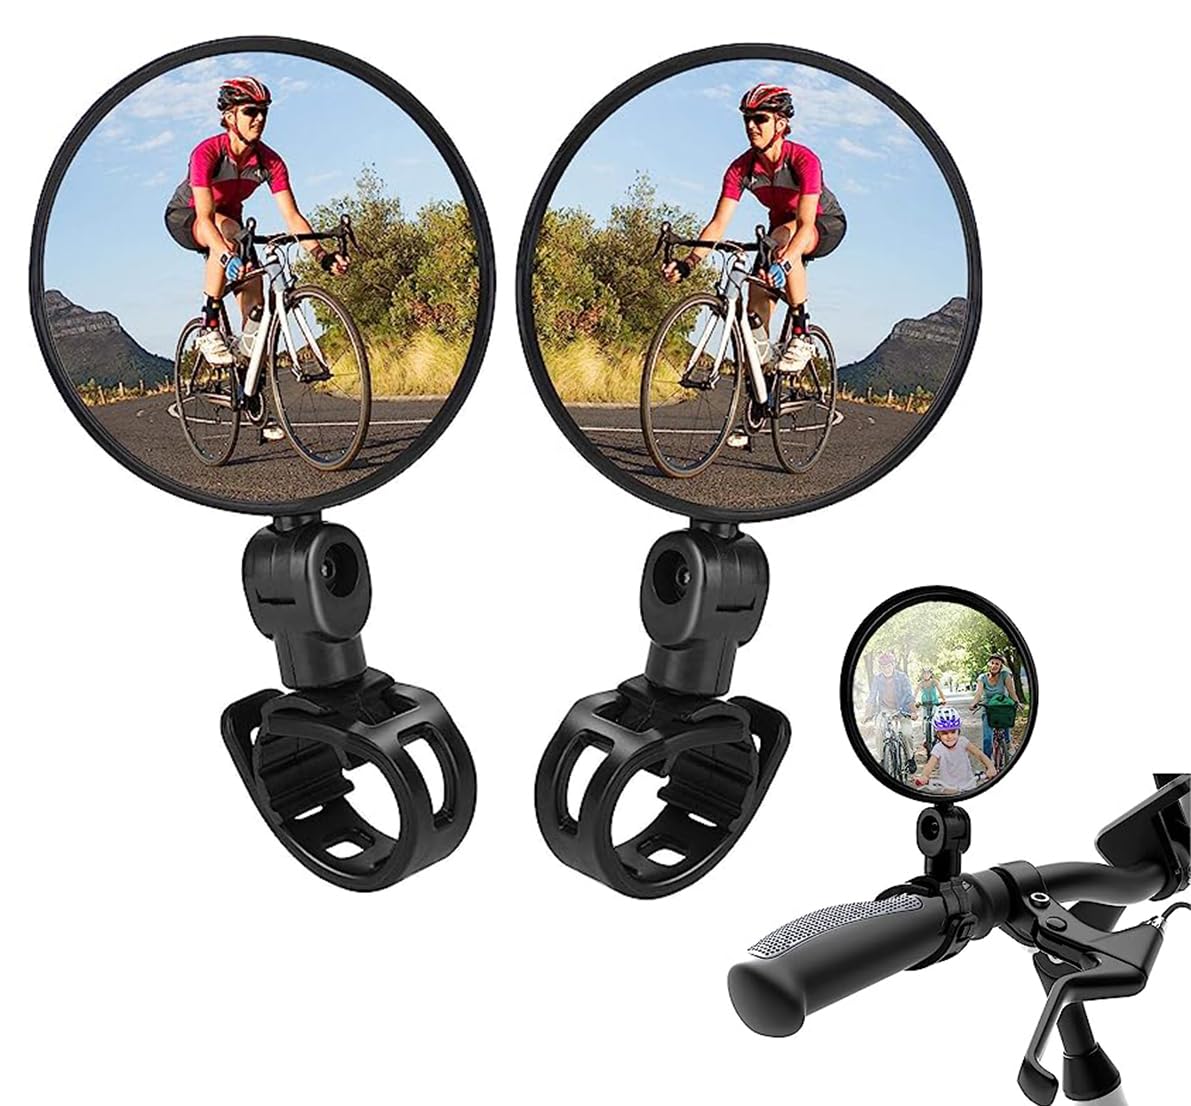 Amacoam 2 Pcs Fahrradspiegel Rückspiegel, Radfahren Fahrrad Rückspiegel HD 360° Drehbar & Klappbar Universal Fahrradspiegel für Lenker 15-35 mm, Fahrrad Spiegel für Rennräder, Mountainbik, E-Bike von Amacoam